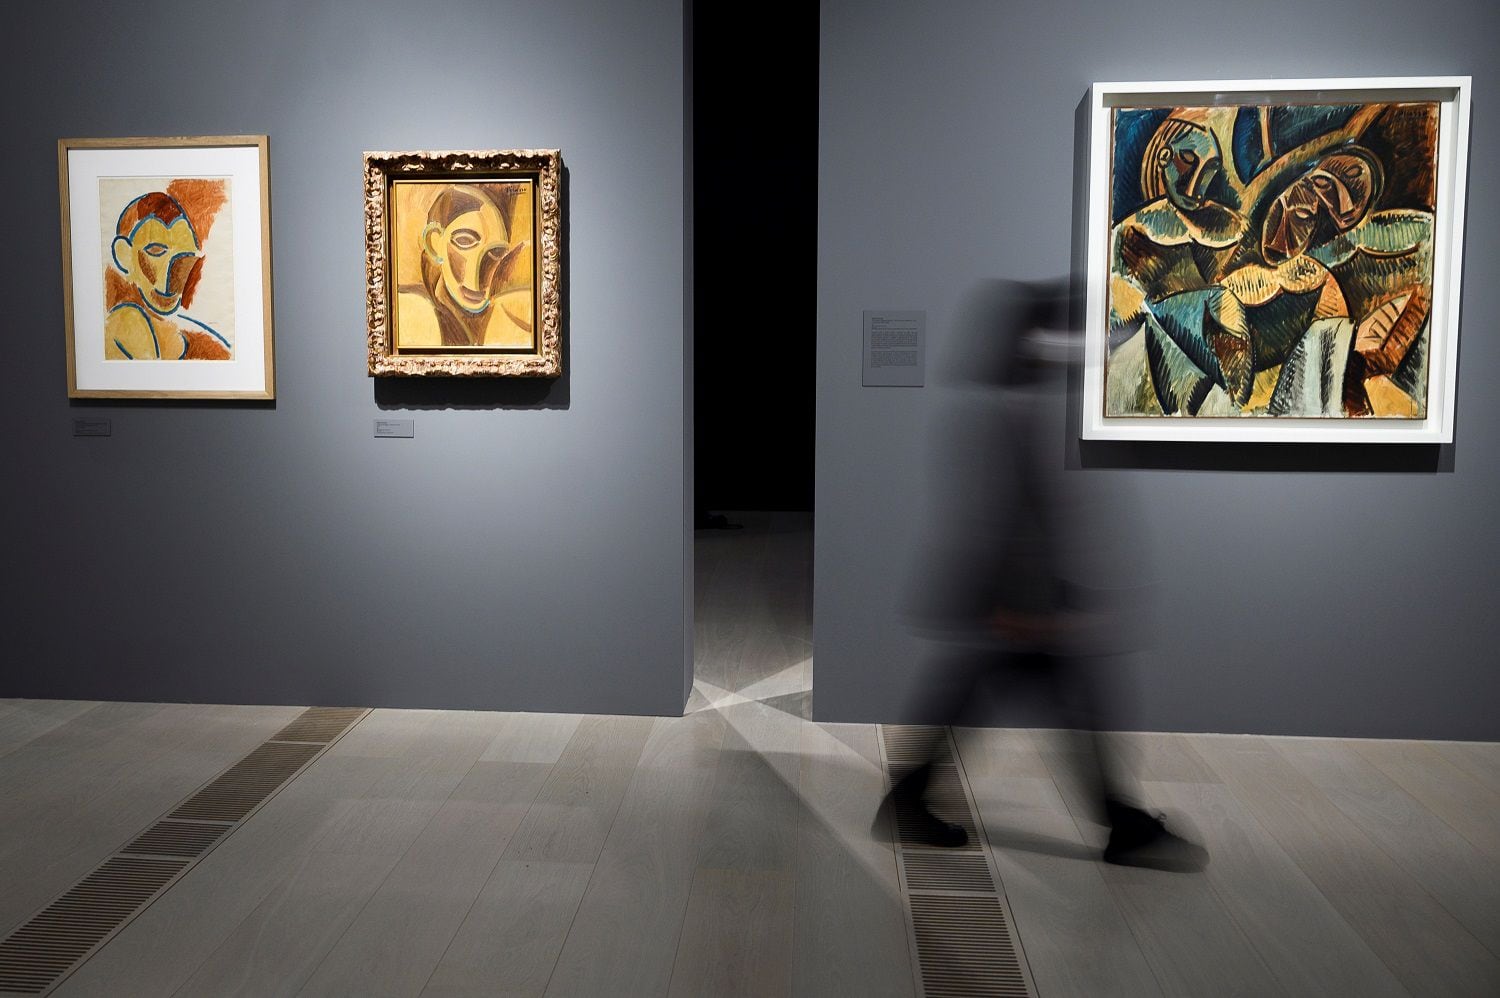 Varias personas visitan la exposición "Picasso ibero", donde se explora por primera vez la influencia del arte ibero en la obra de Pablo Picasso, desde principios del siglo XX hasta sus últimos años de creación, este viernes en el Centro Botín de Santander. EFE/Pedro Puente Hoyos